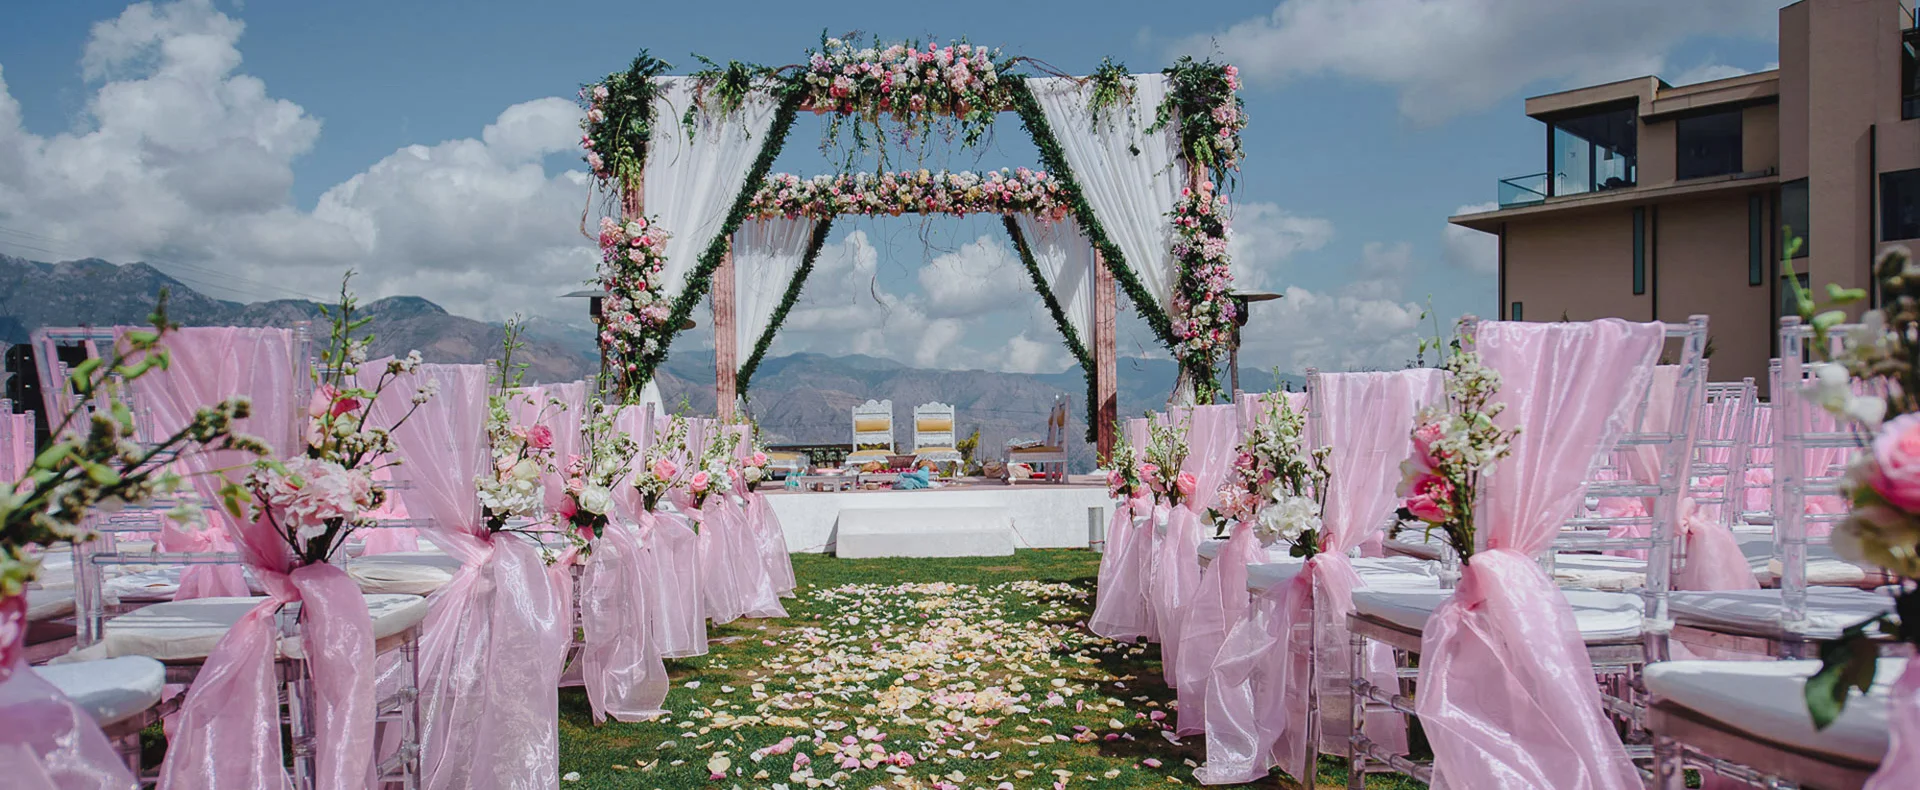 Wedding Resorts in Mussoorie | Destination Wedding Venues in Mussoorie